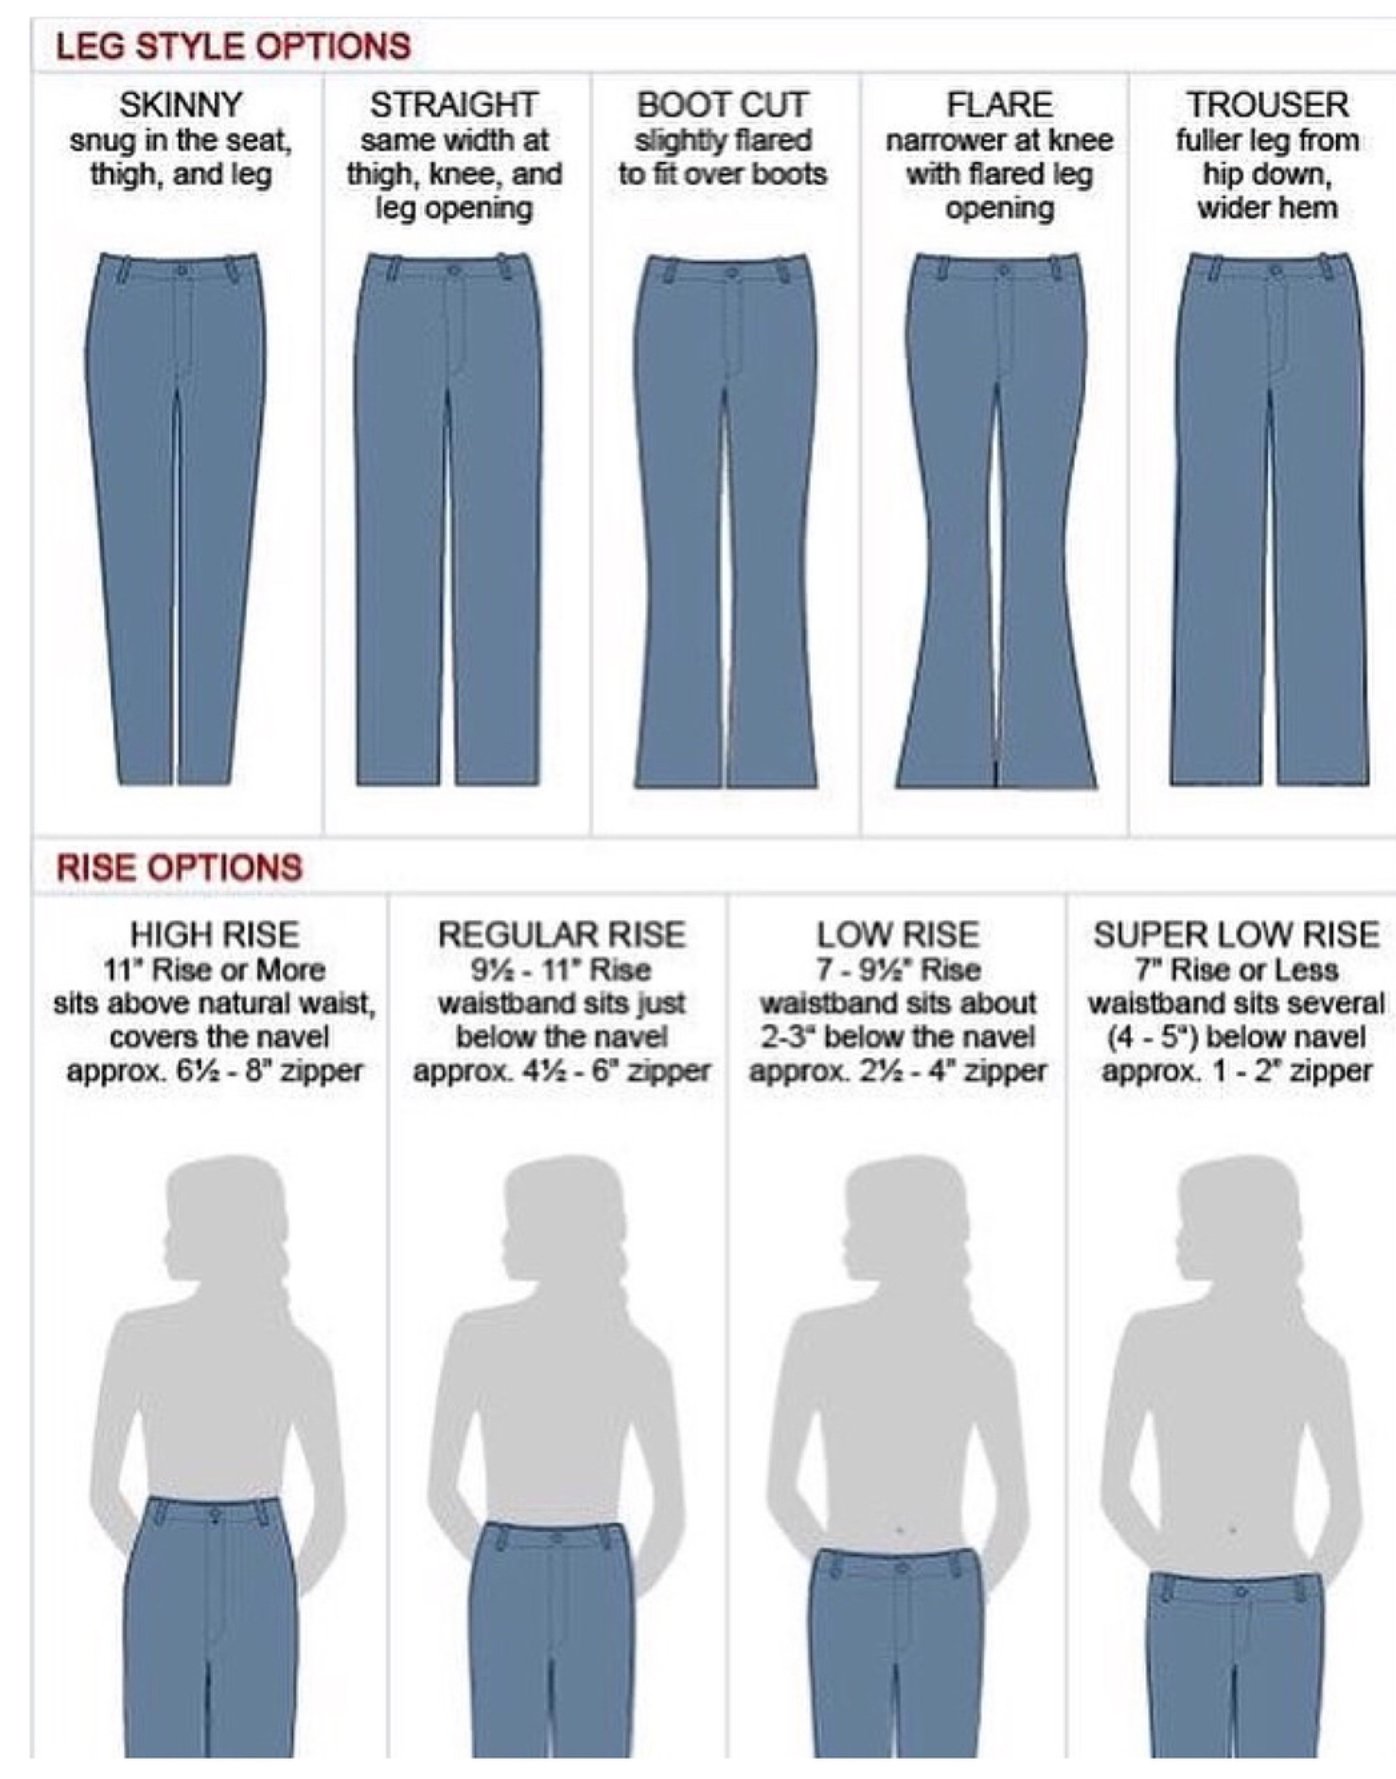 Wear jeans перевод на русский. Типы джинс. Форма джинс название. Классификация джинсов женских. Наименования фасонов женских брюк.